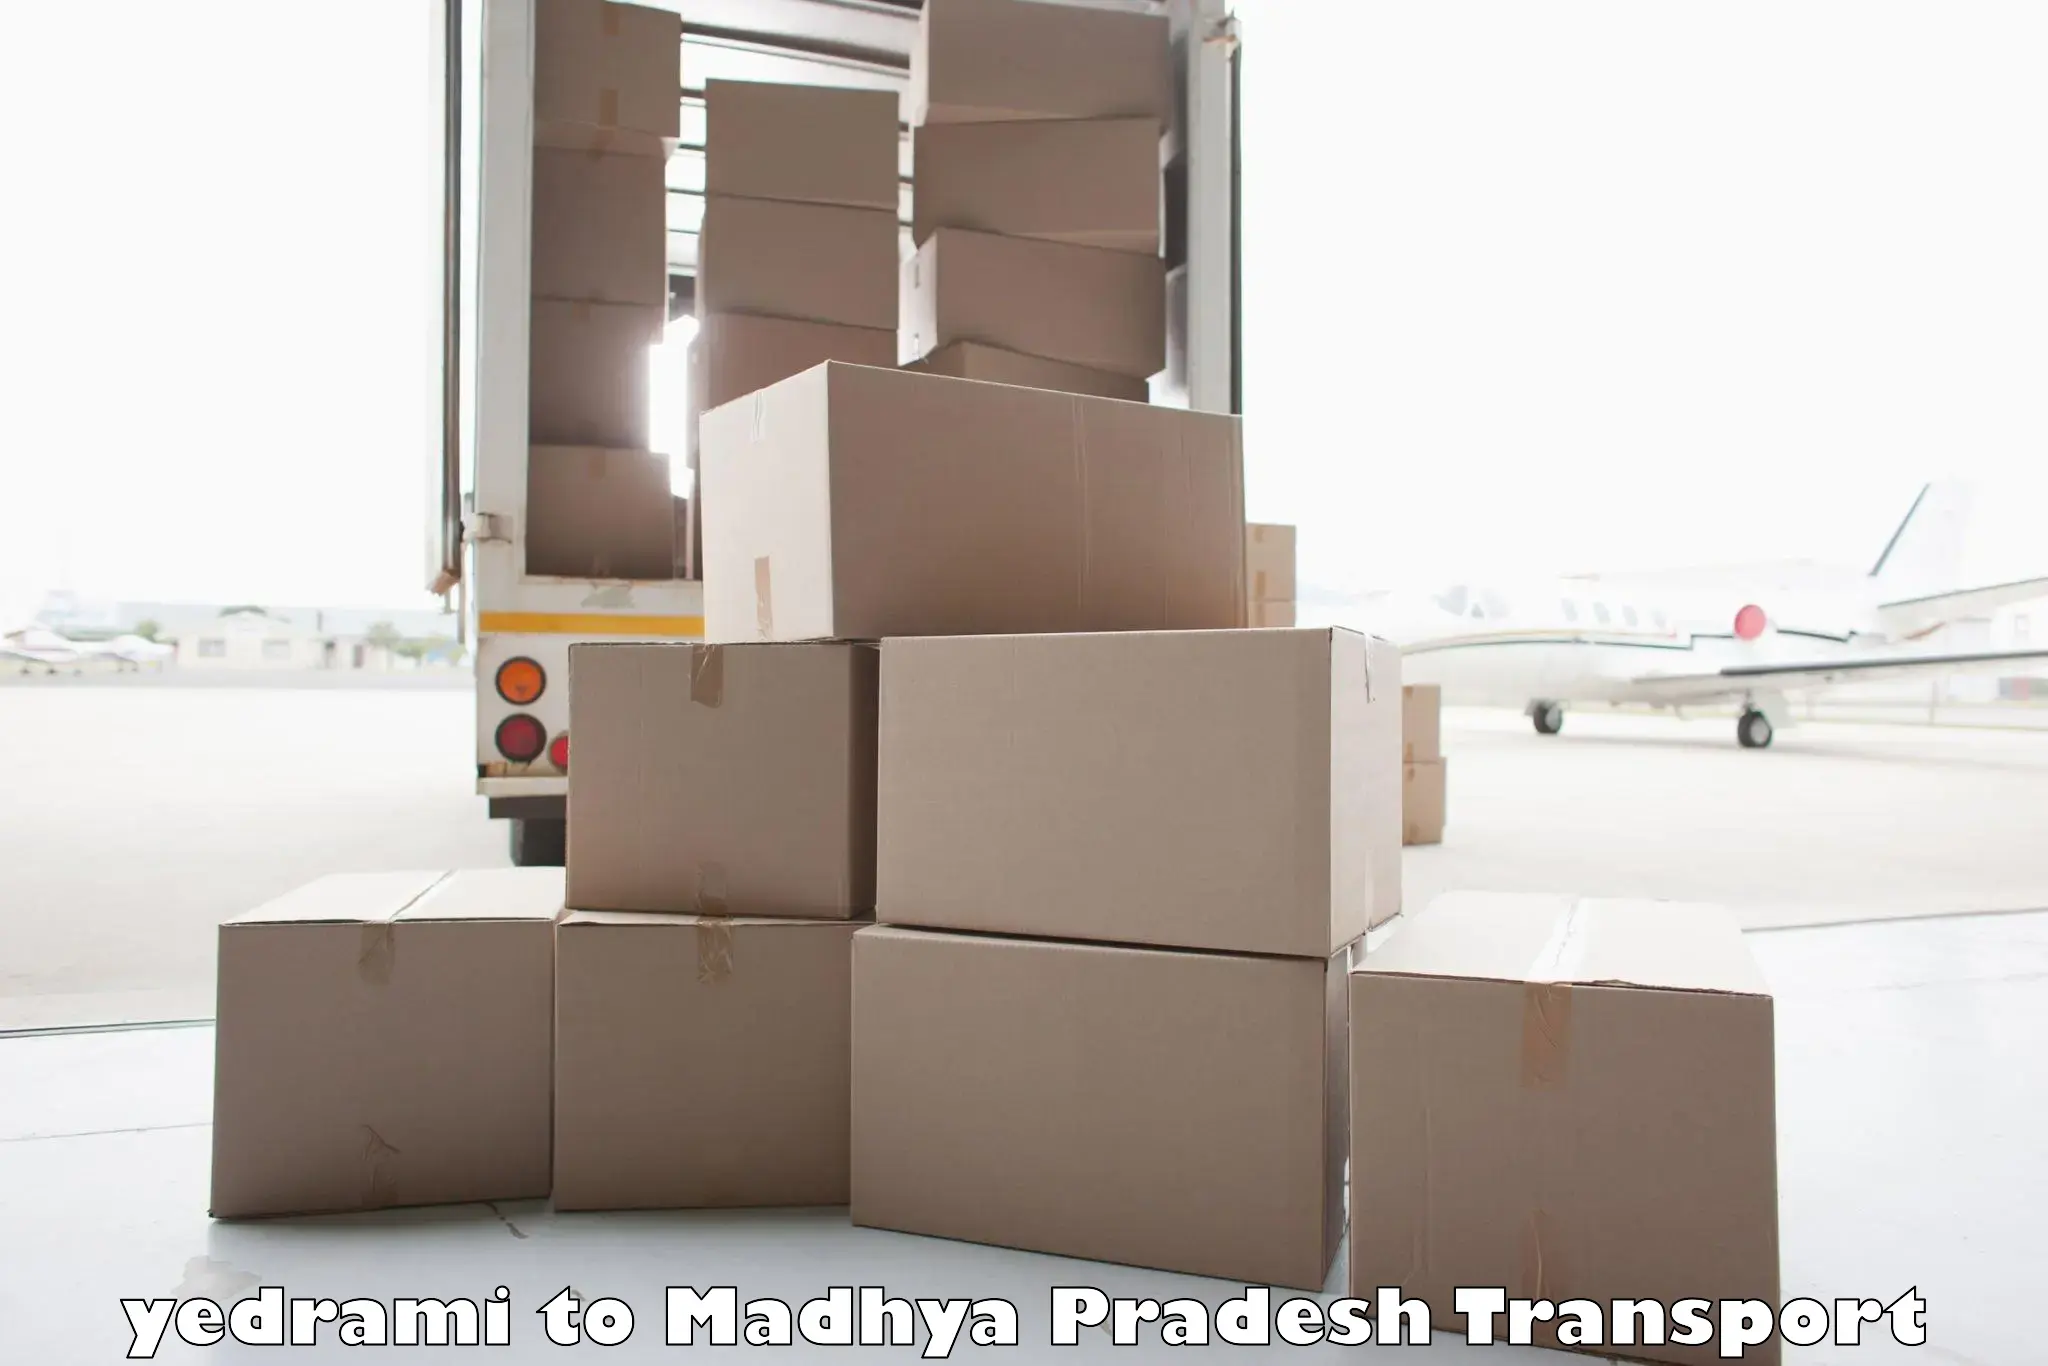 Commercial transport service yedrami to Madhya Pradesh